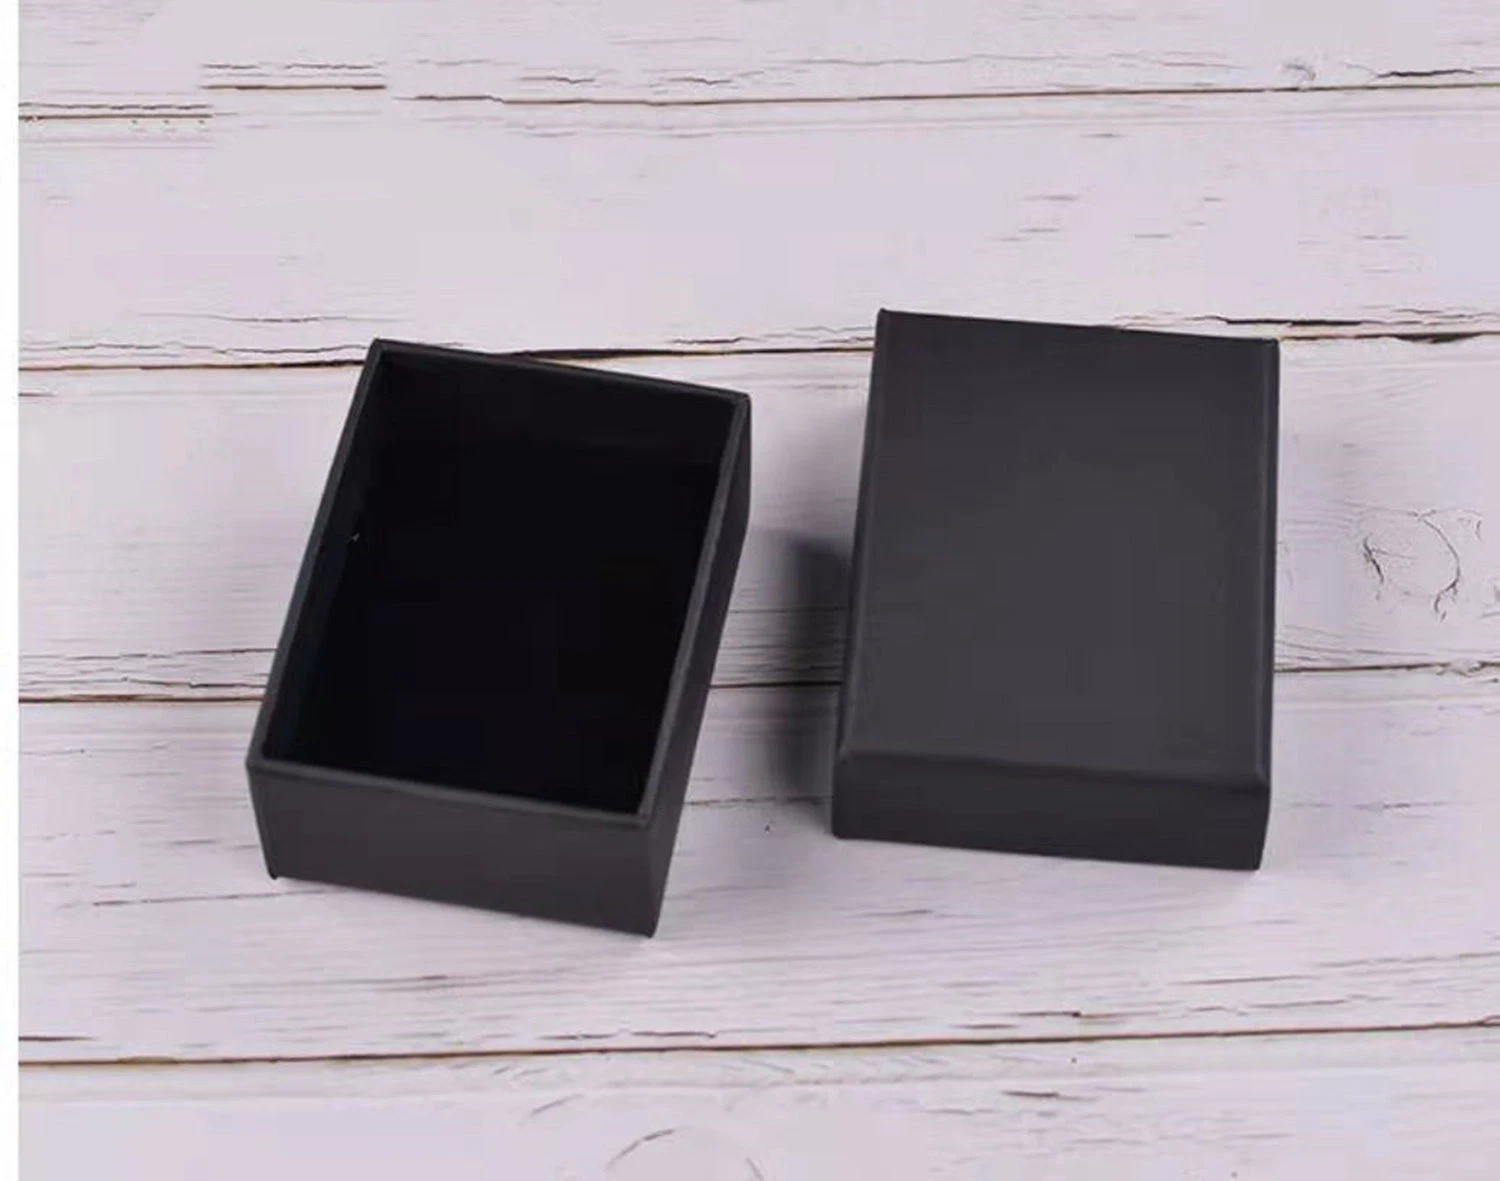 Cartón negro personalizados hechos a mano Joyas de regalo bolsas de cartón de embalaje de los casos pendientes pulseras anillos Collar cajas